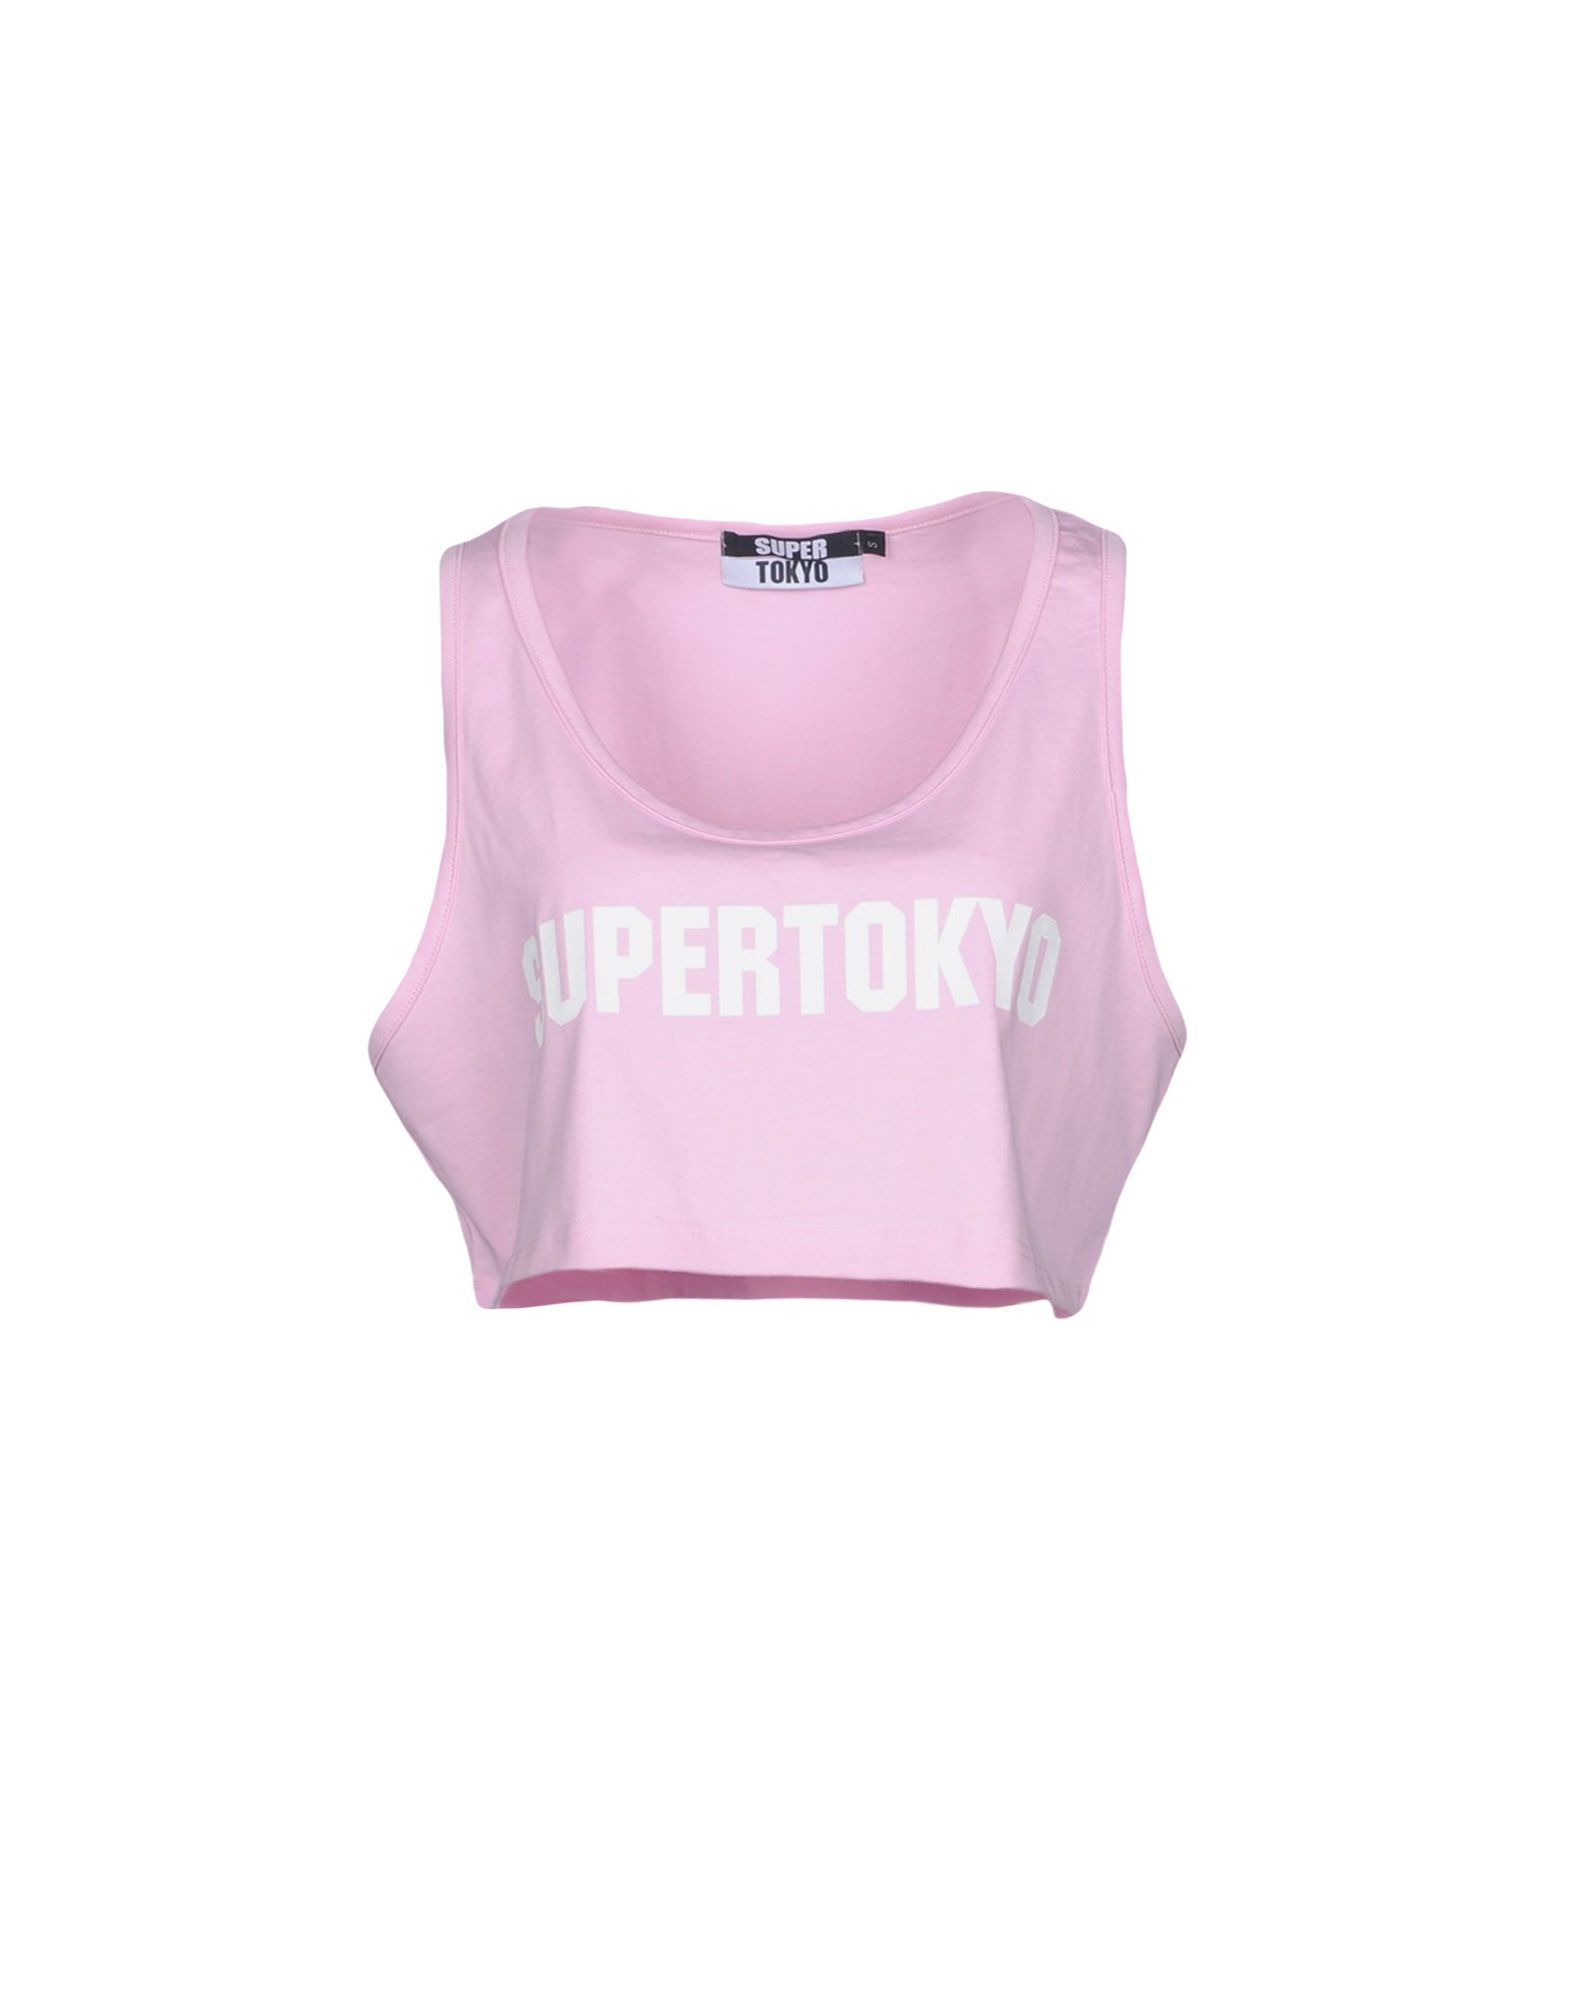 《送料無料》STK SUPERTOKYO レディース タンクトップ ピンク M コットン 100%